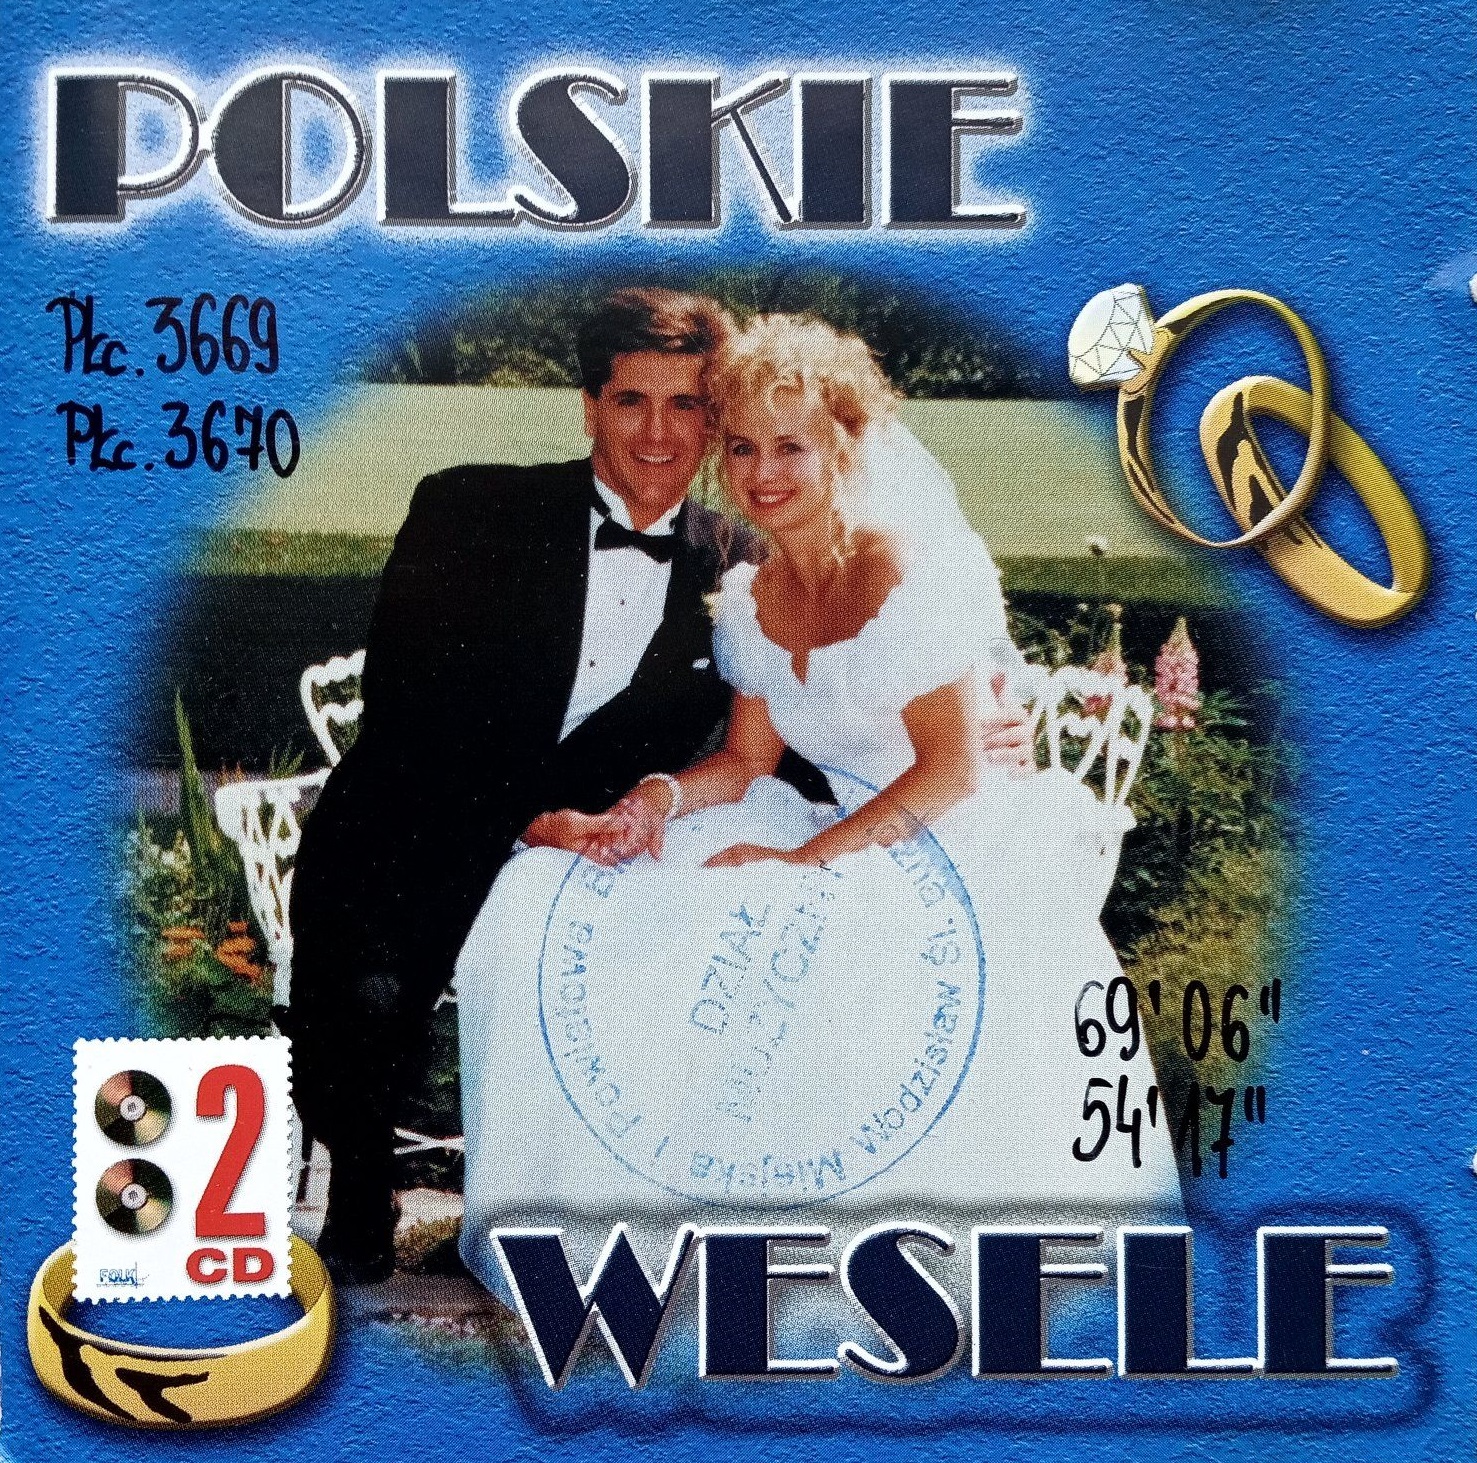 Polskie Wesele